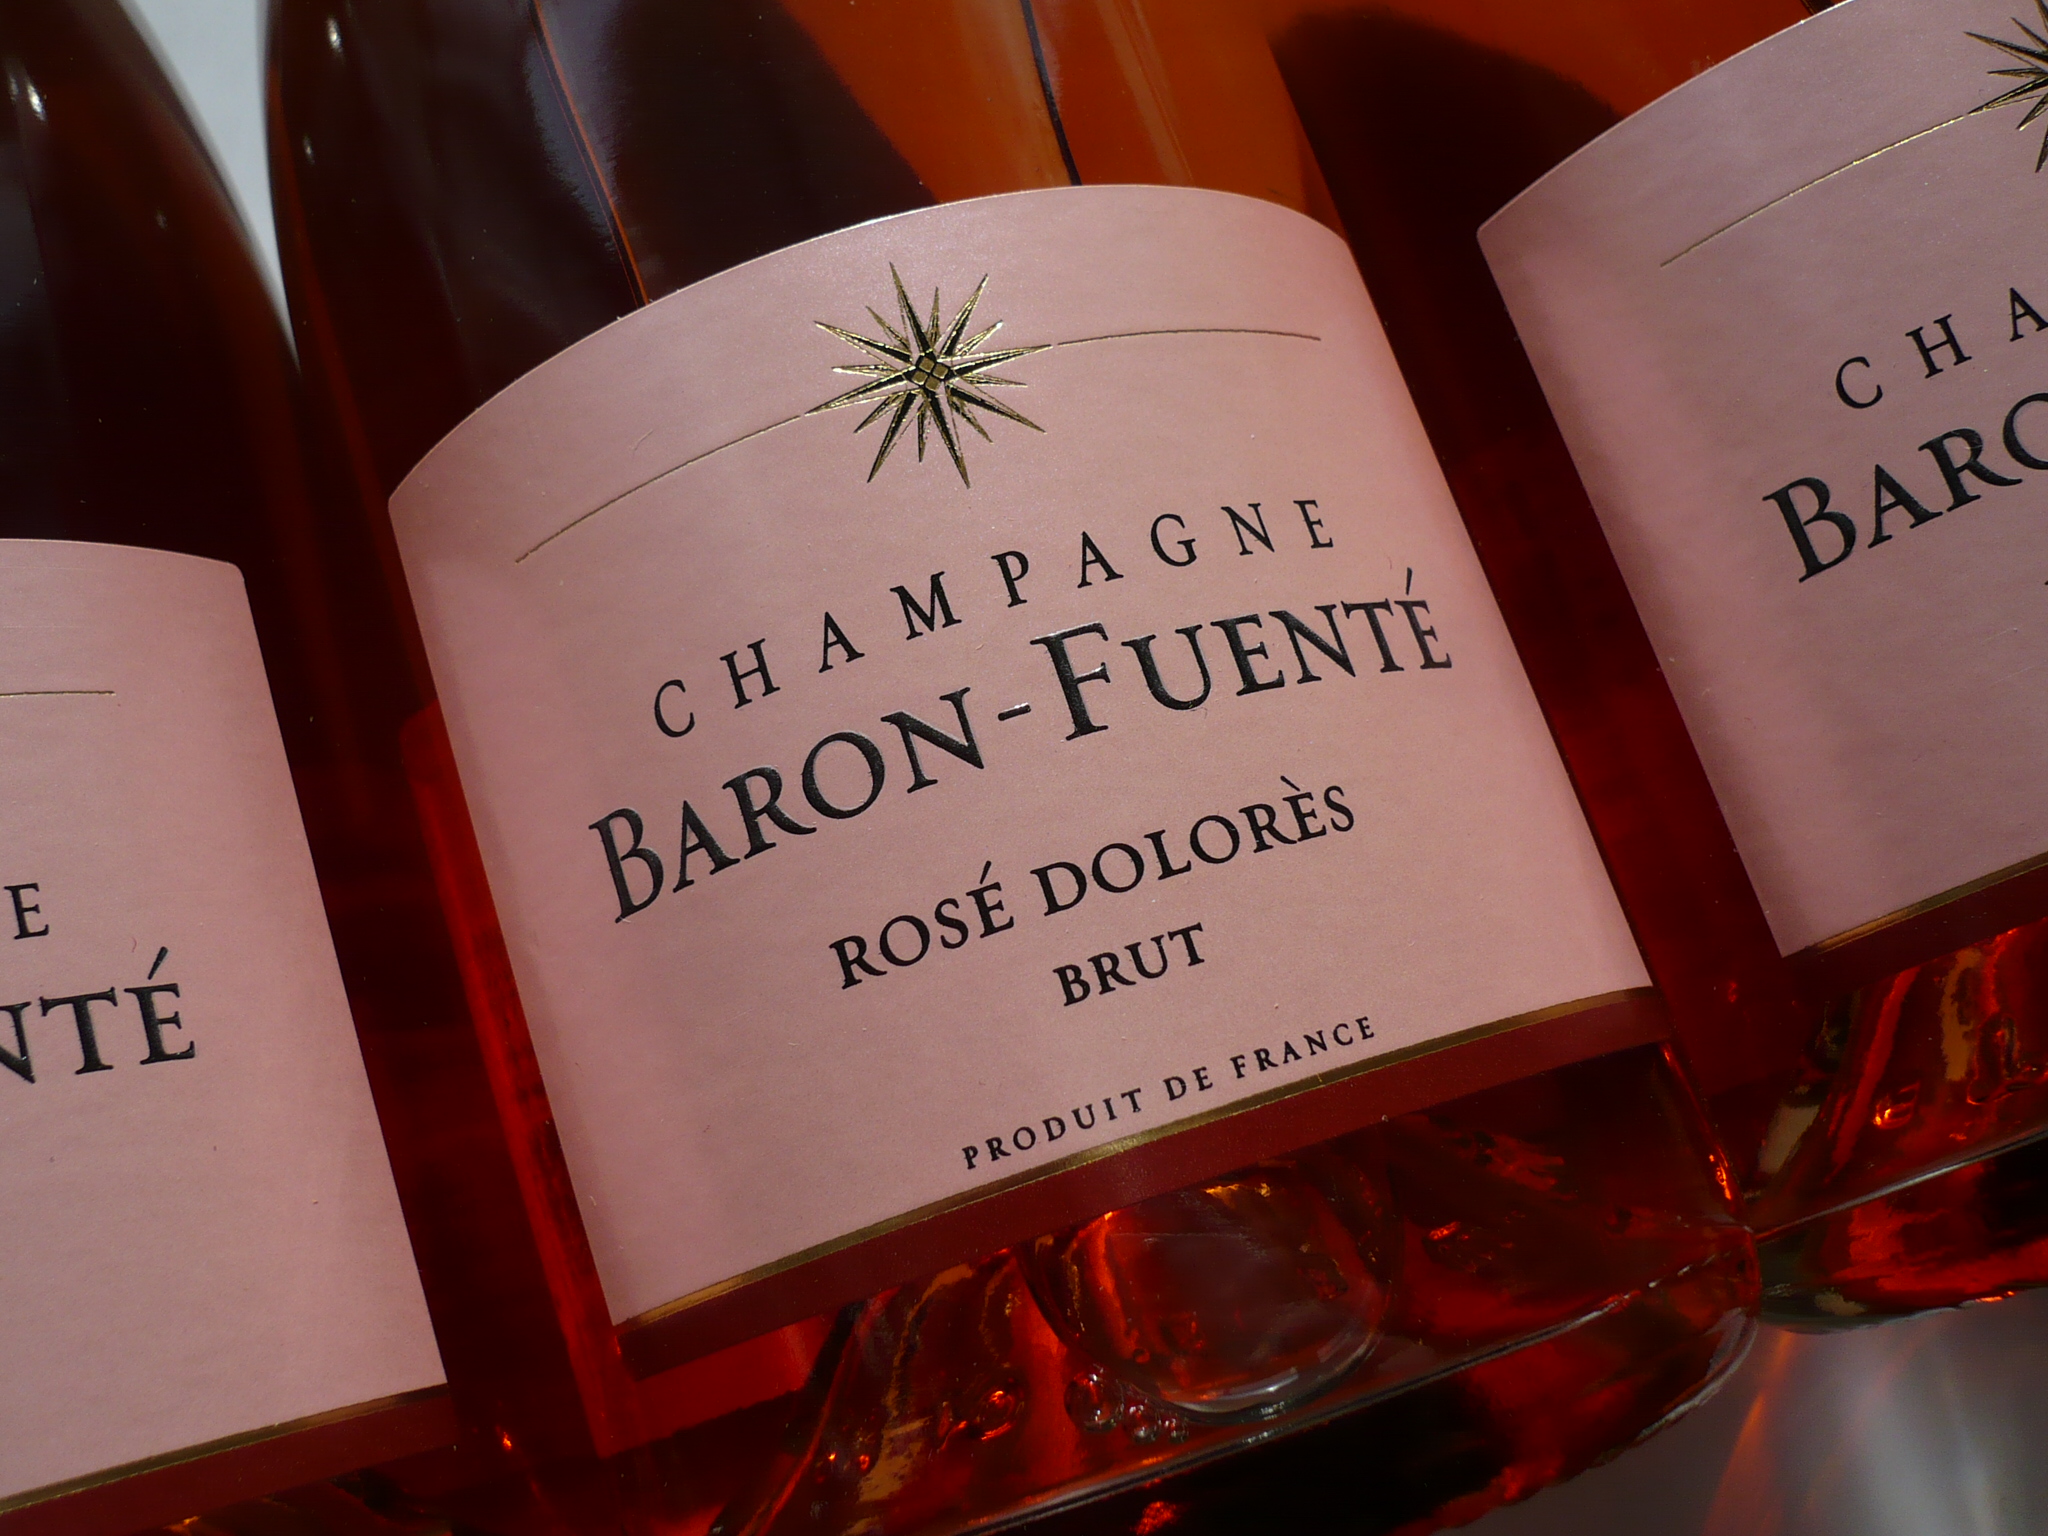 BARON-FUENTÉ Rosé "Dolores" brut AOC -0,75l-